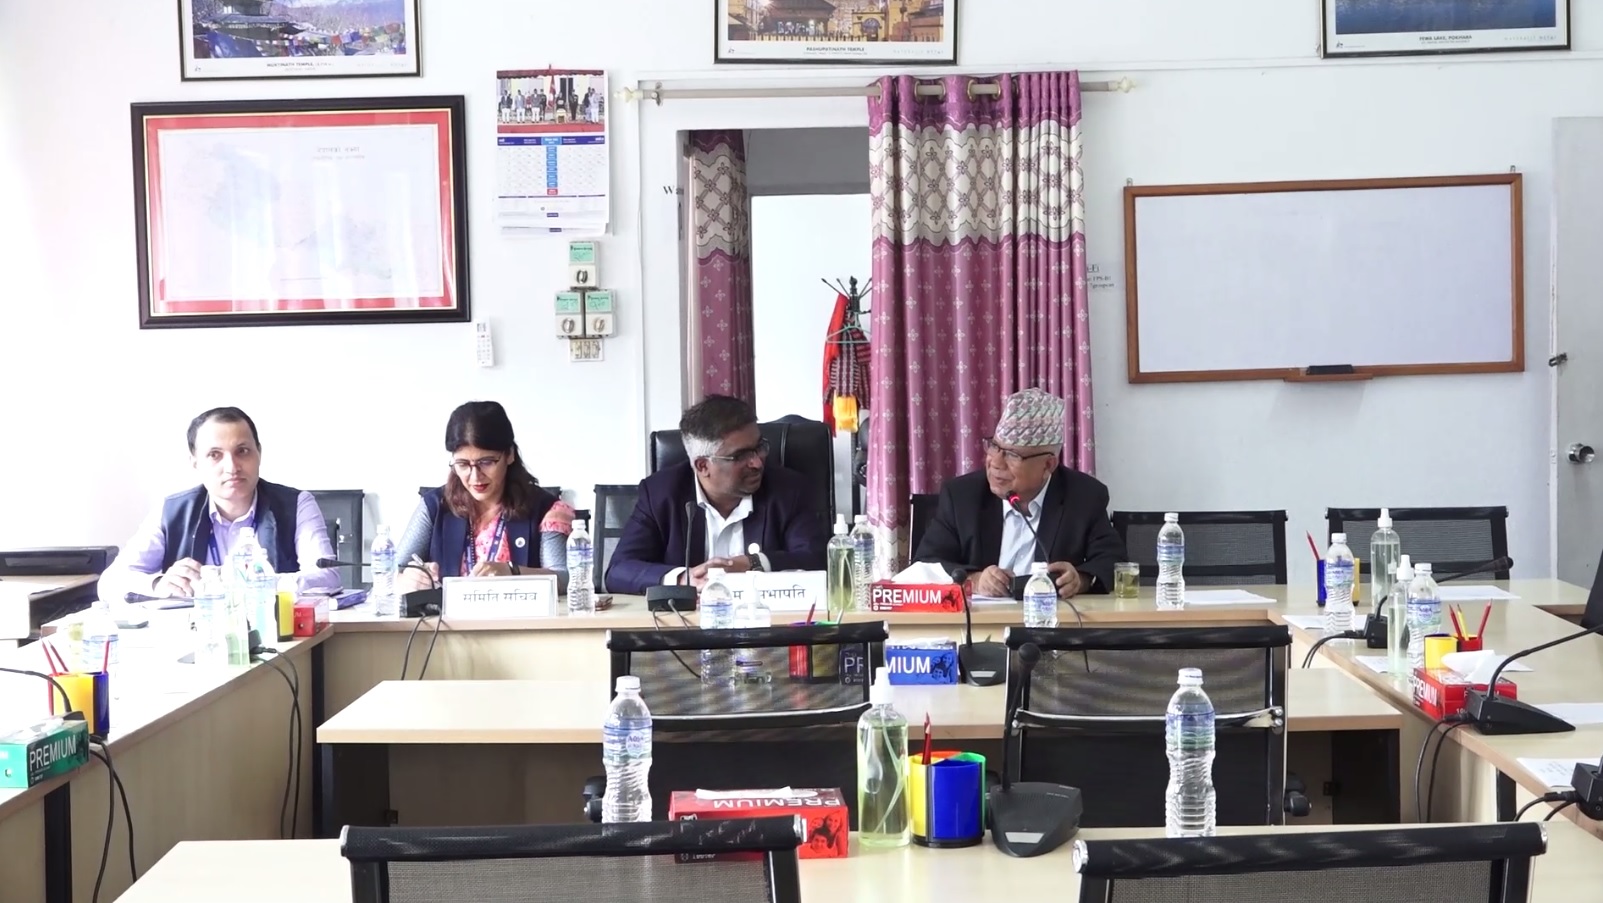 परराष्ट्र नीतिमा साझा सहमति बनाउनुपर्नेमा जोड (भिडियो रिपोर्टसहित)